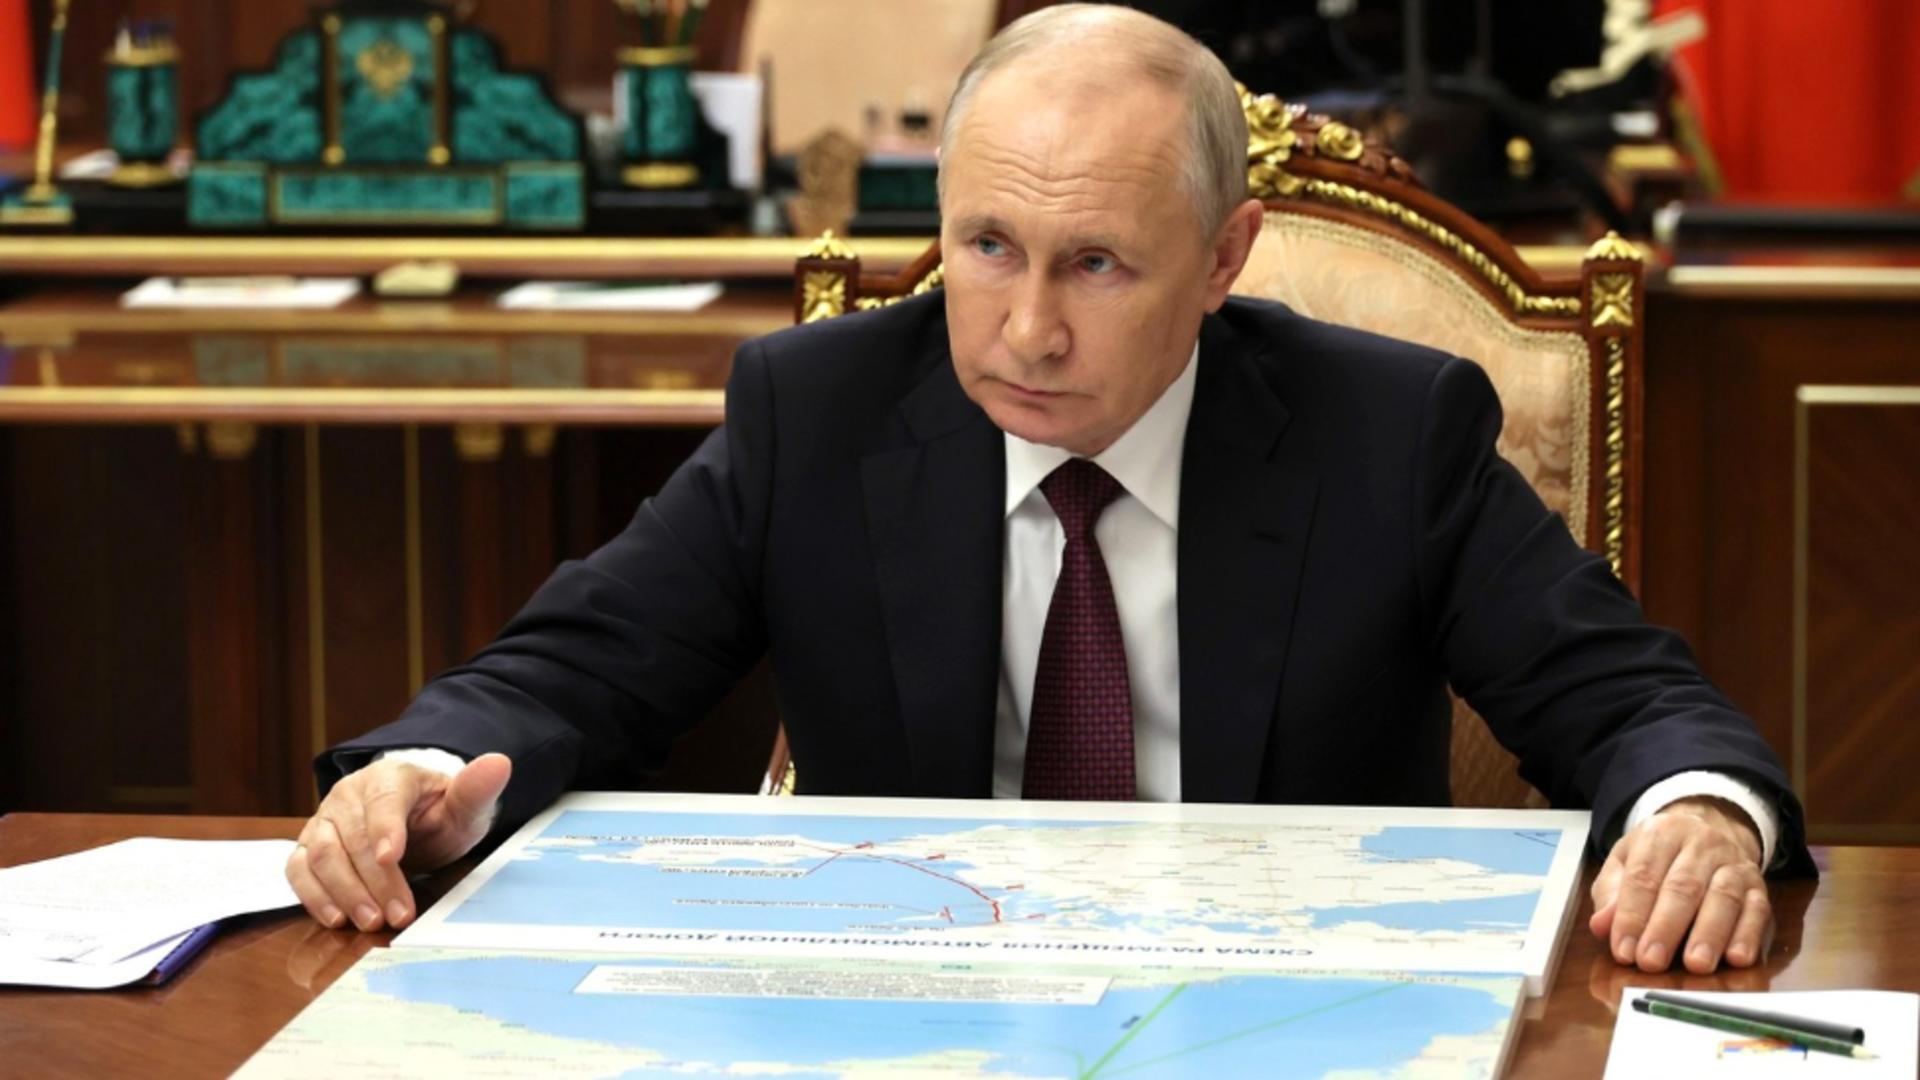 După modelul lui Stalin, Putin vrea să păstreze ce a ocupat (Profimedia)